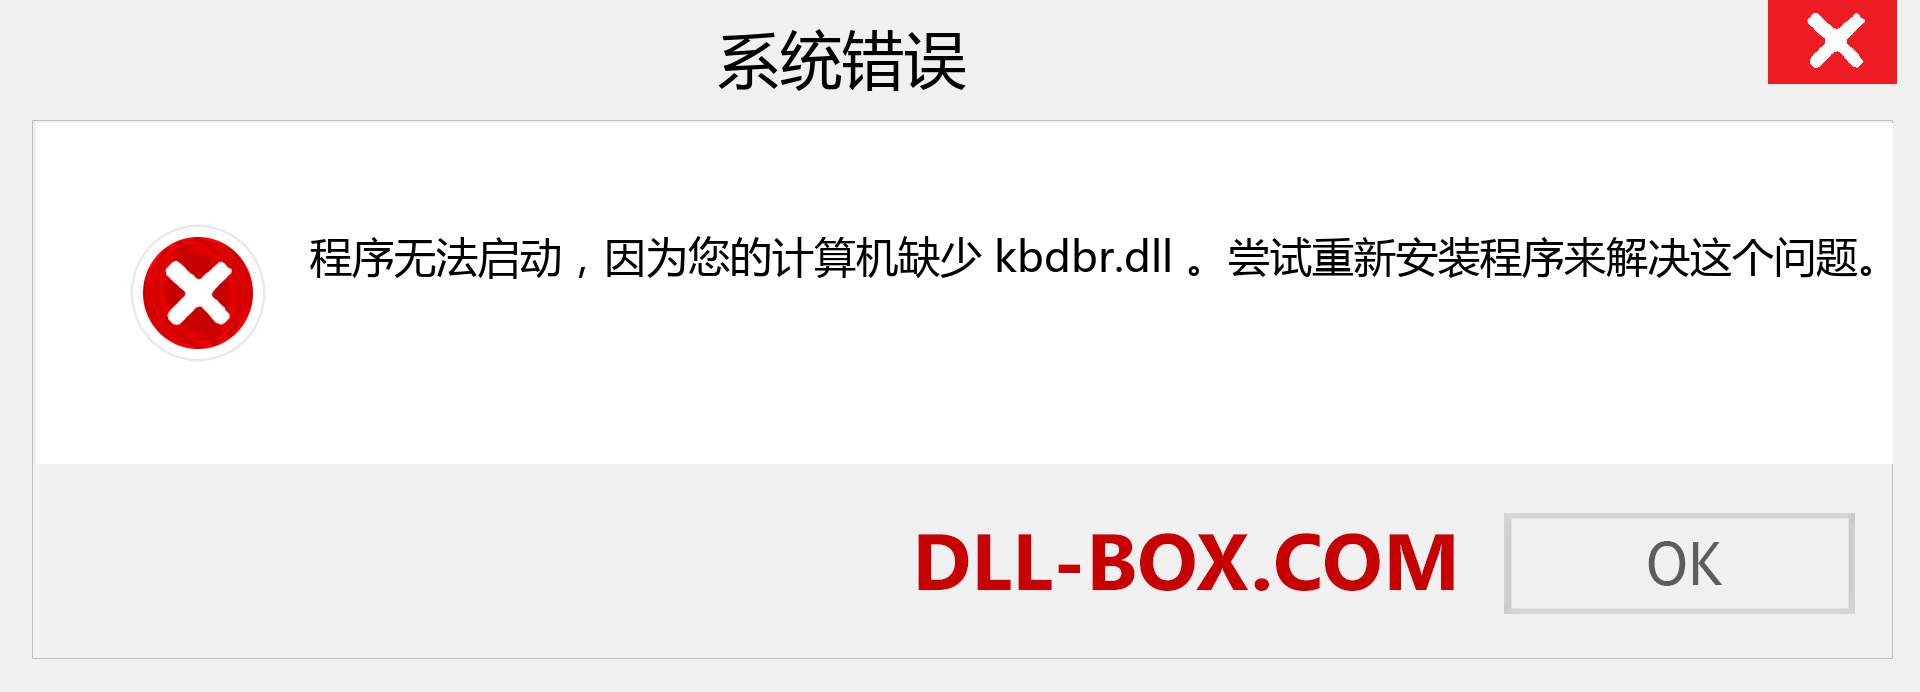 kbdbr.dll 文件丢失？。 适用于 Windows 7、8、10 的下载 - 修复 Windows、照片、图像上的 kbdbr dll 丢失错误